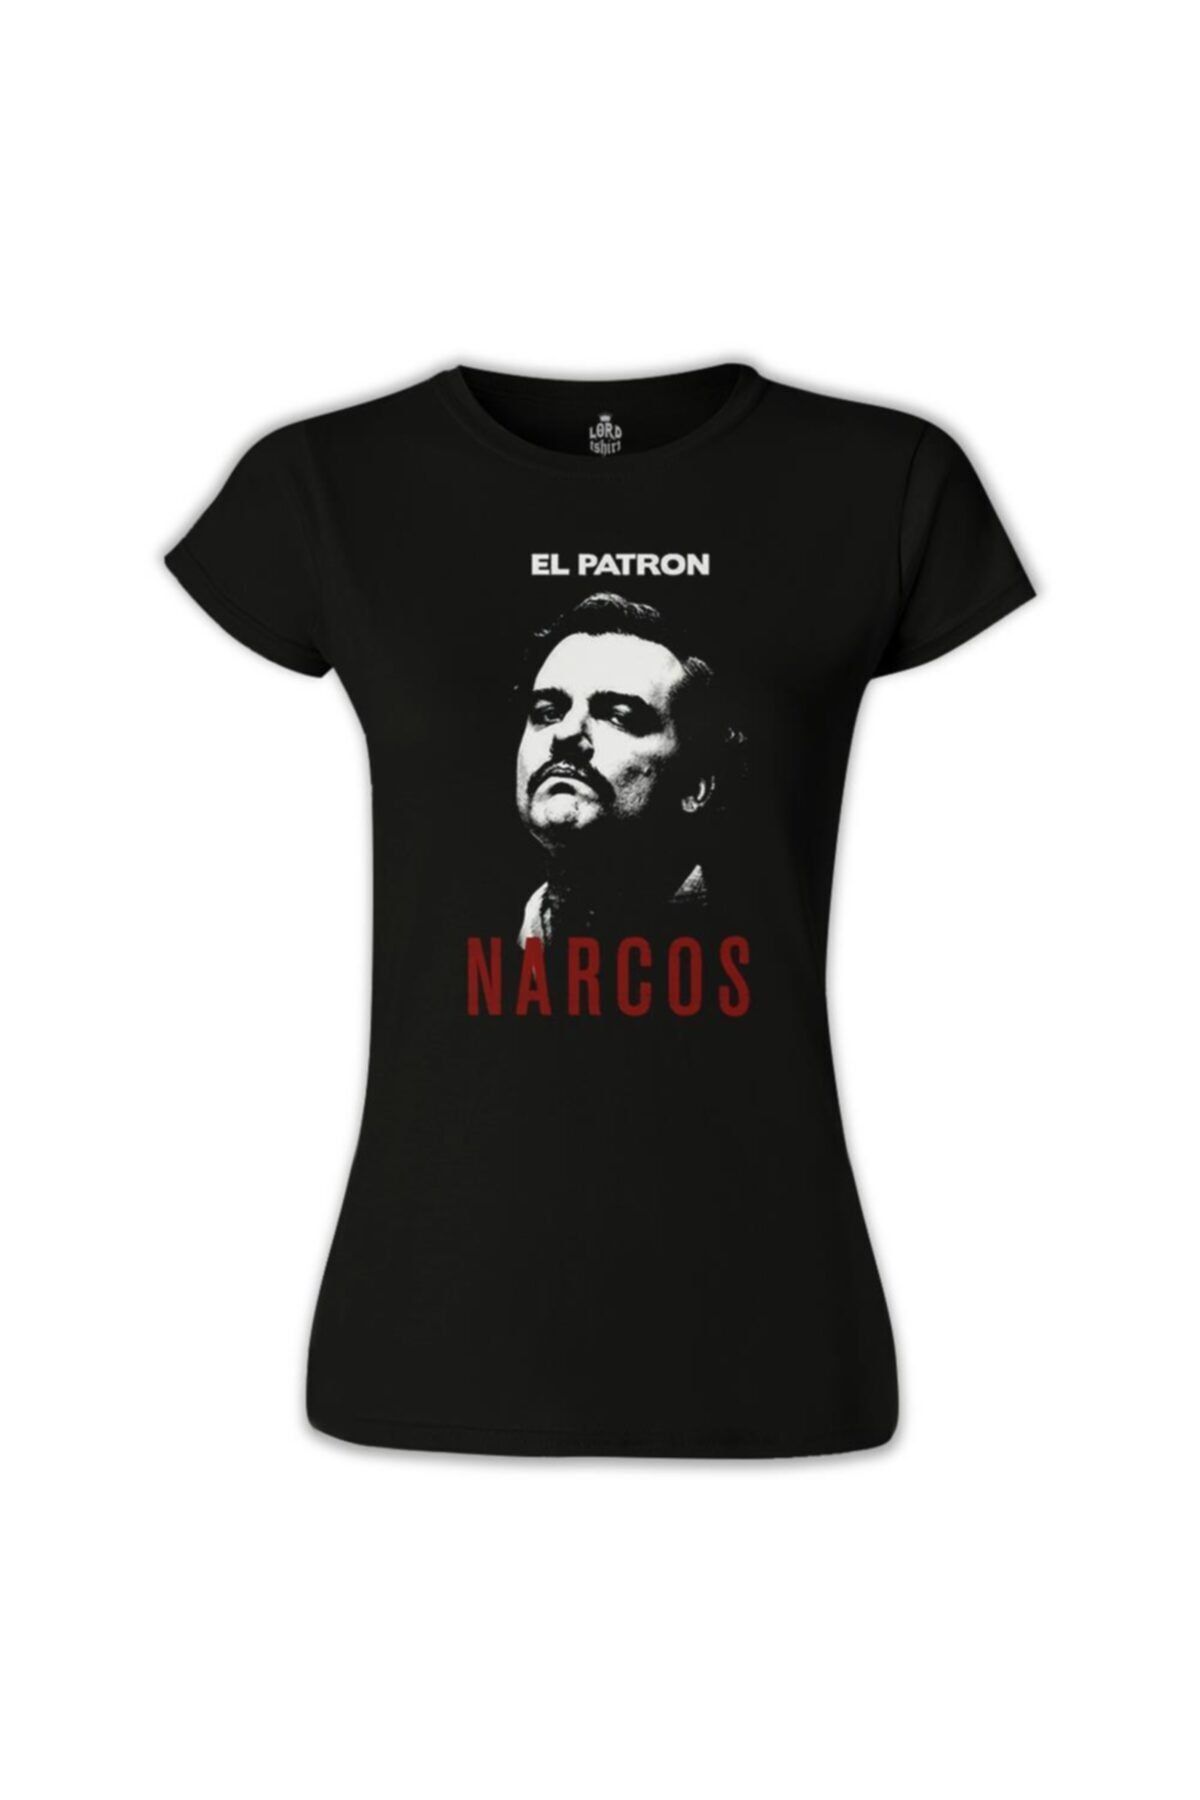 Lord T-Shirt Narcos - El Patron Siyah Bayan Tshirt